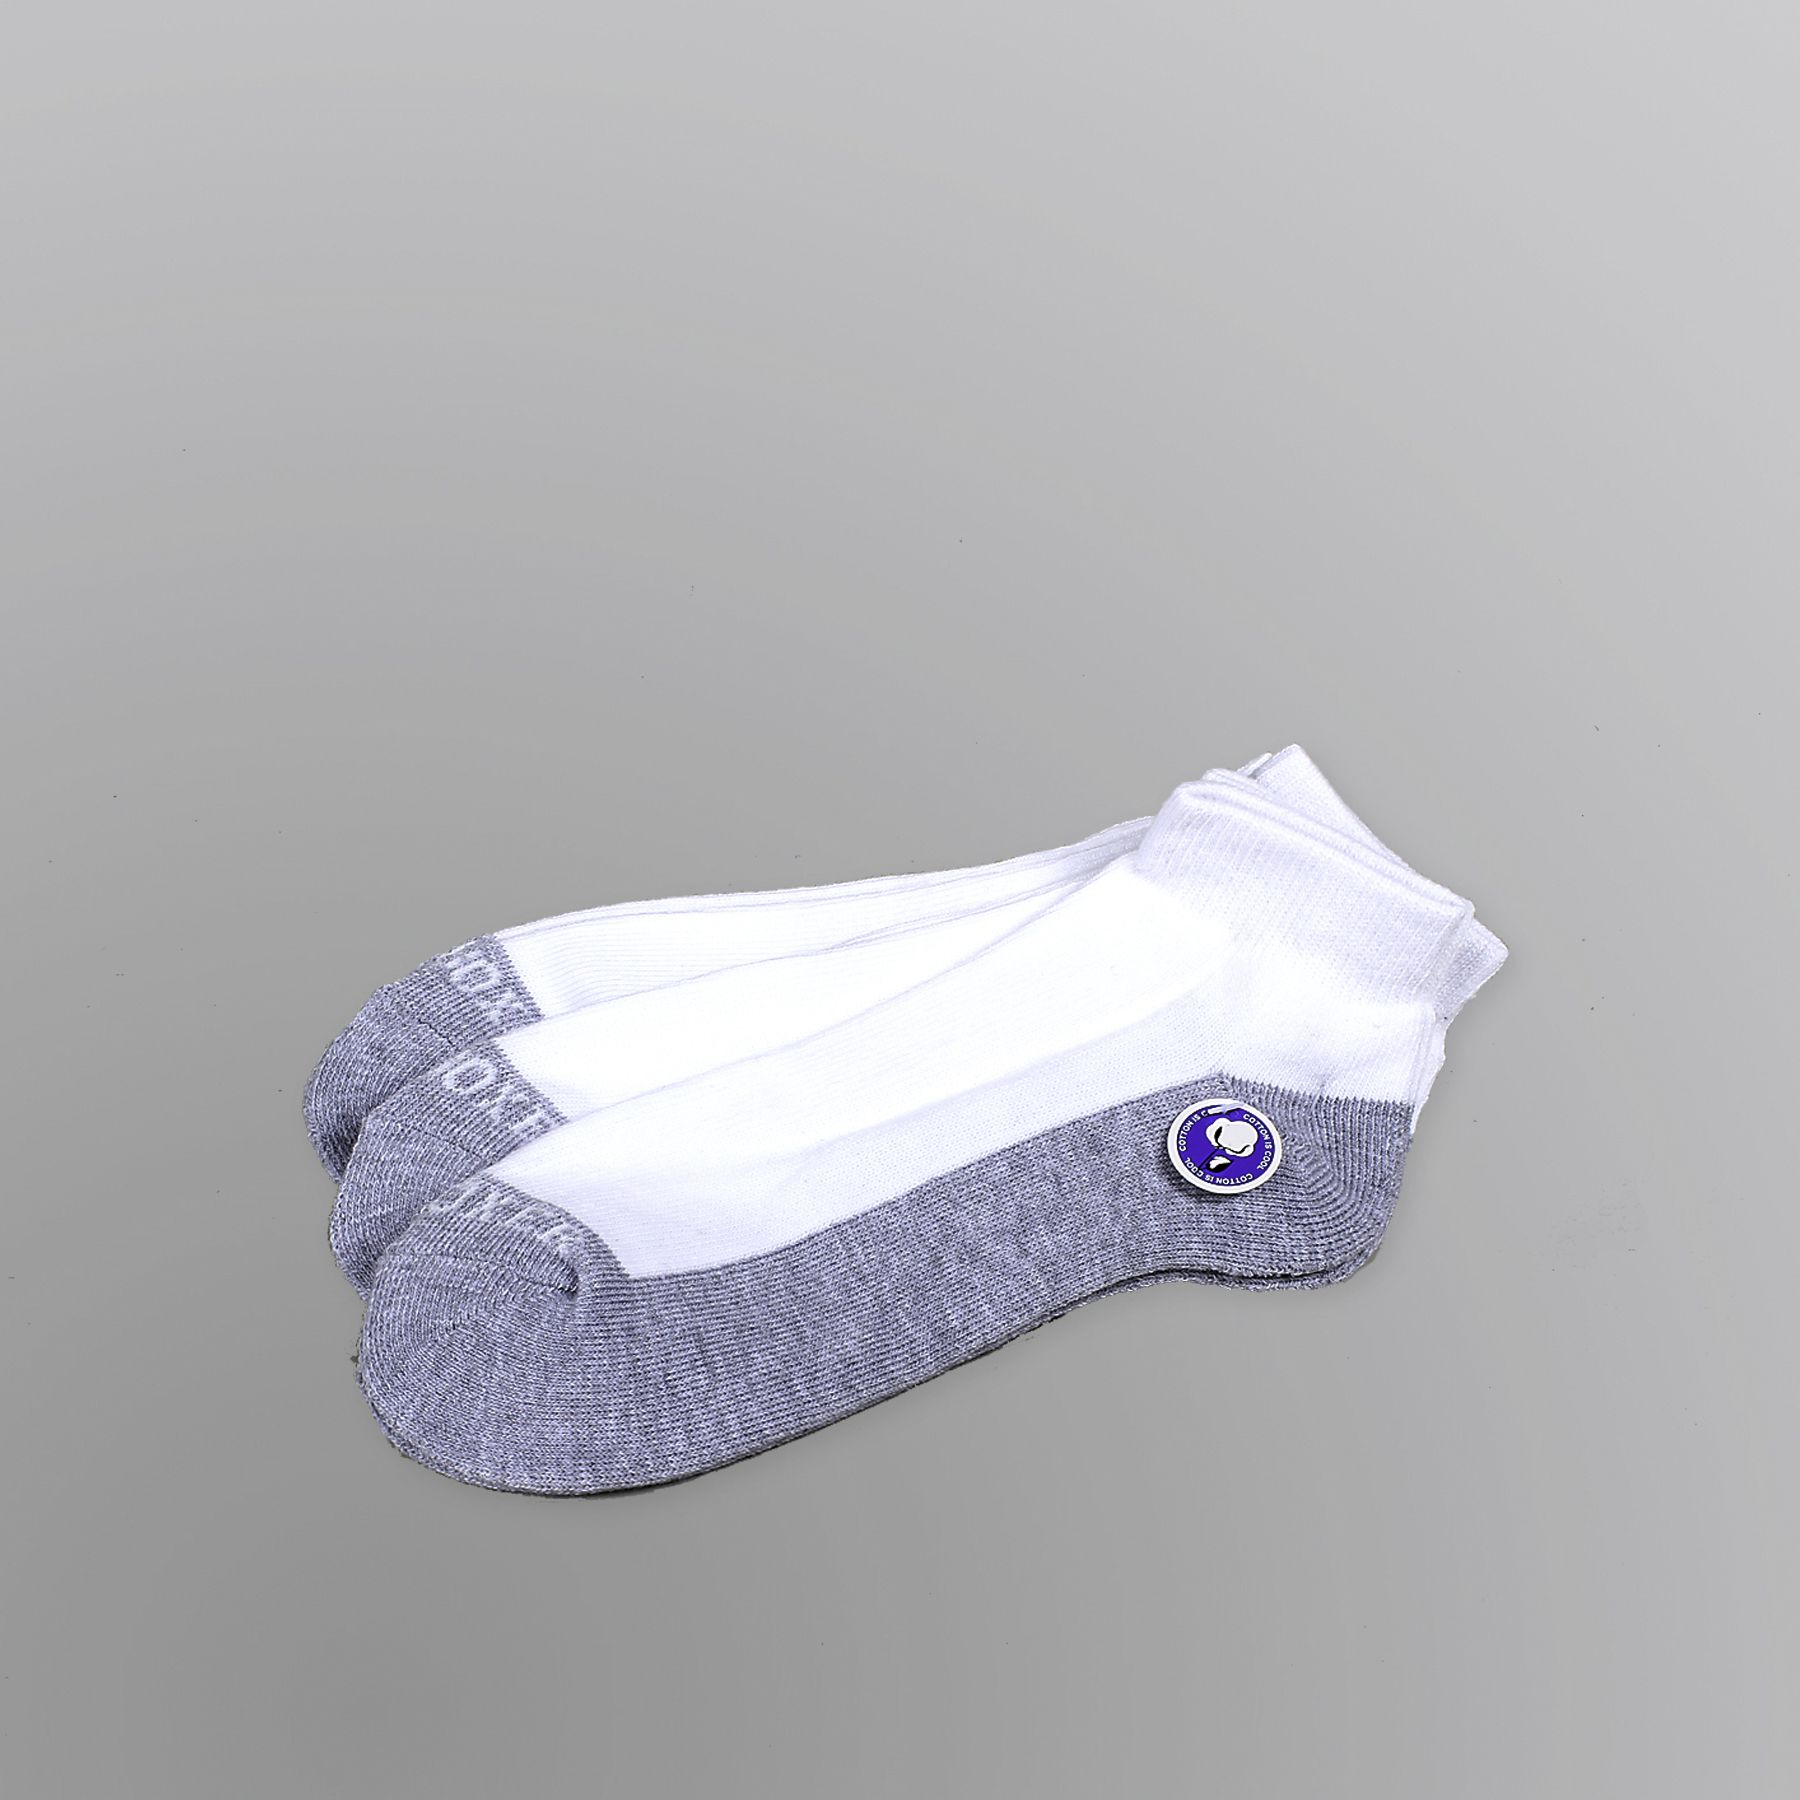 Joe Boxer Men's Quarter Socks White Mesh Grey Footbed - 3-pack  Size 10-13